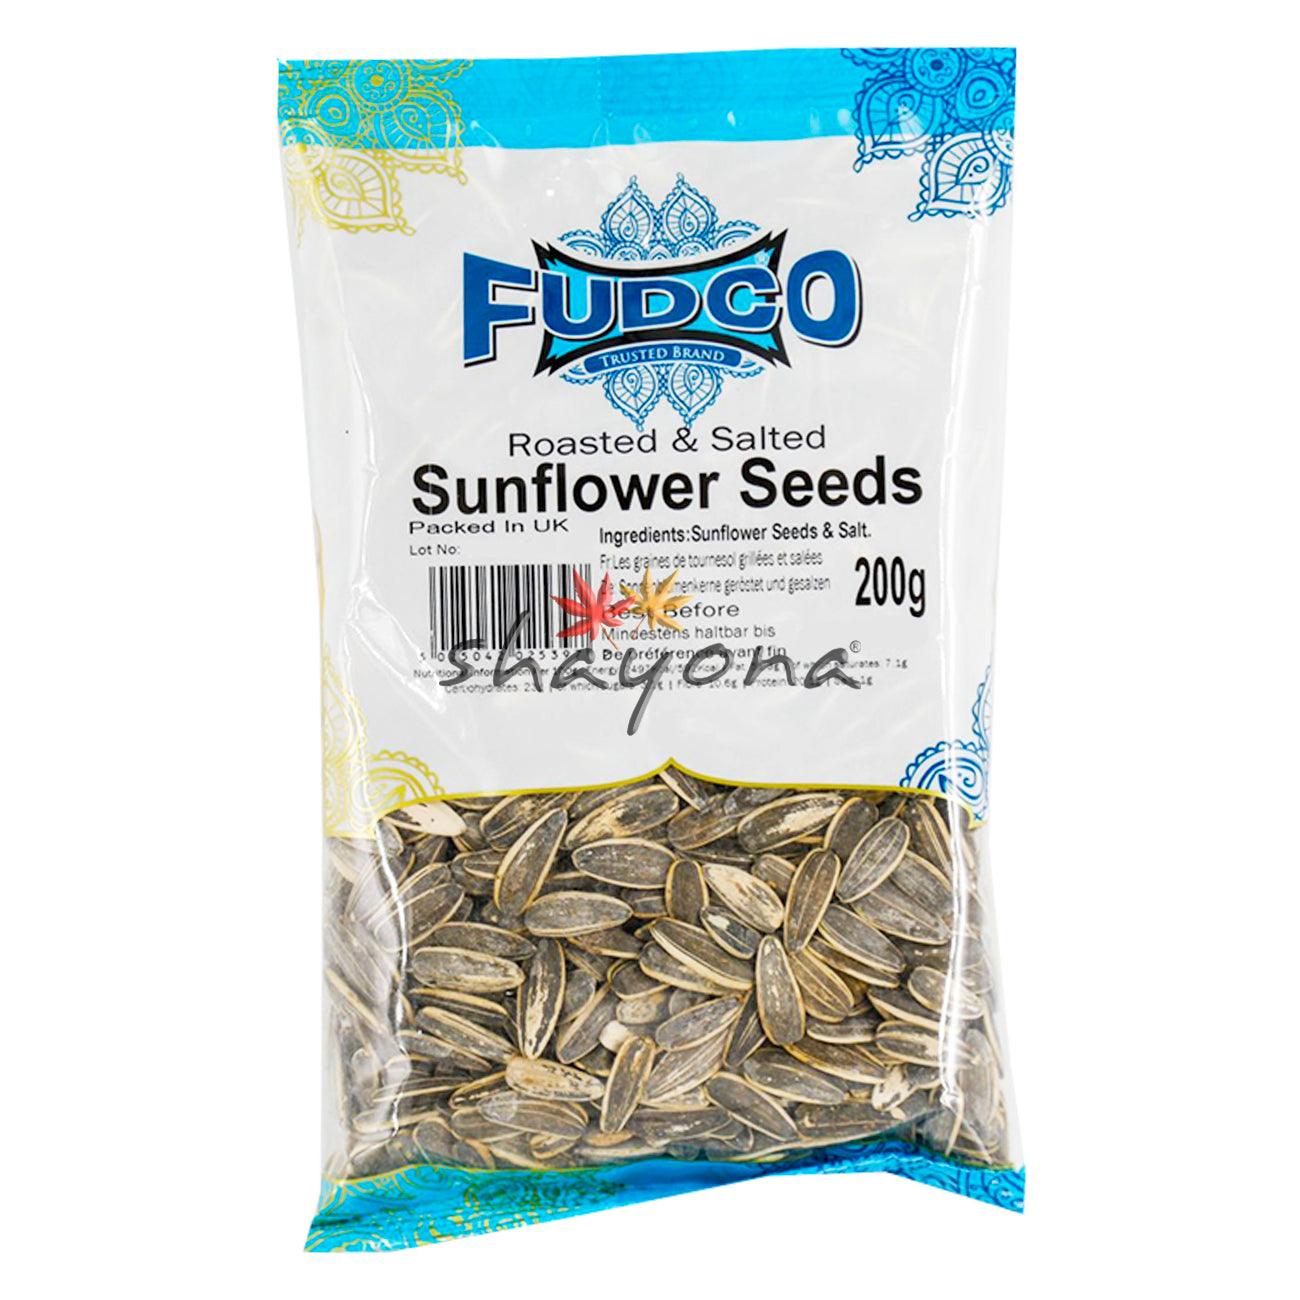 Fudco Roasted & Salted Sunflower Seeds - Shayona UK